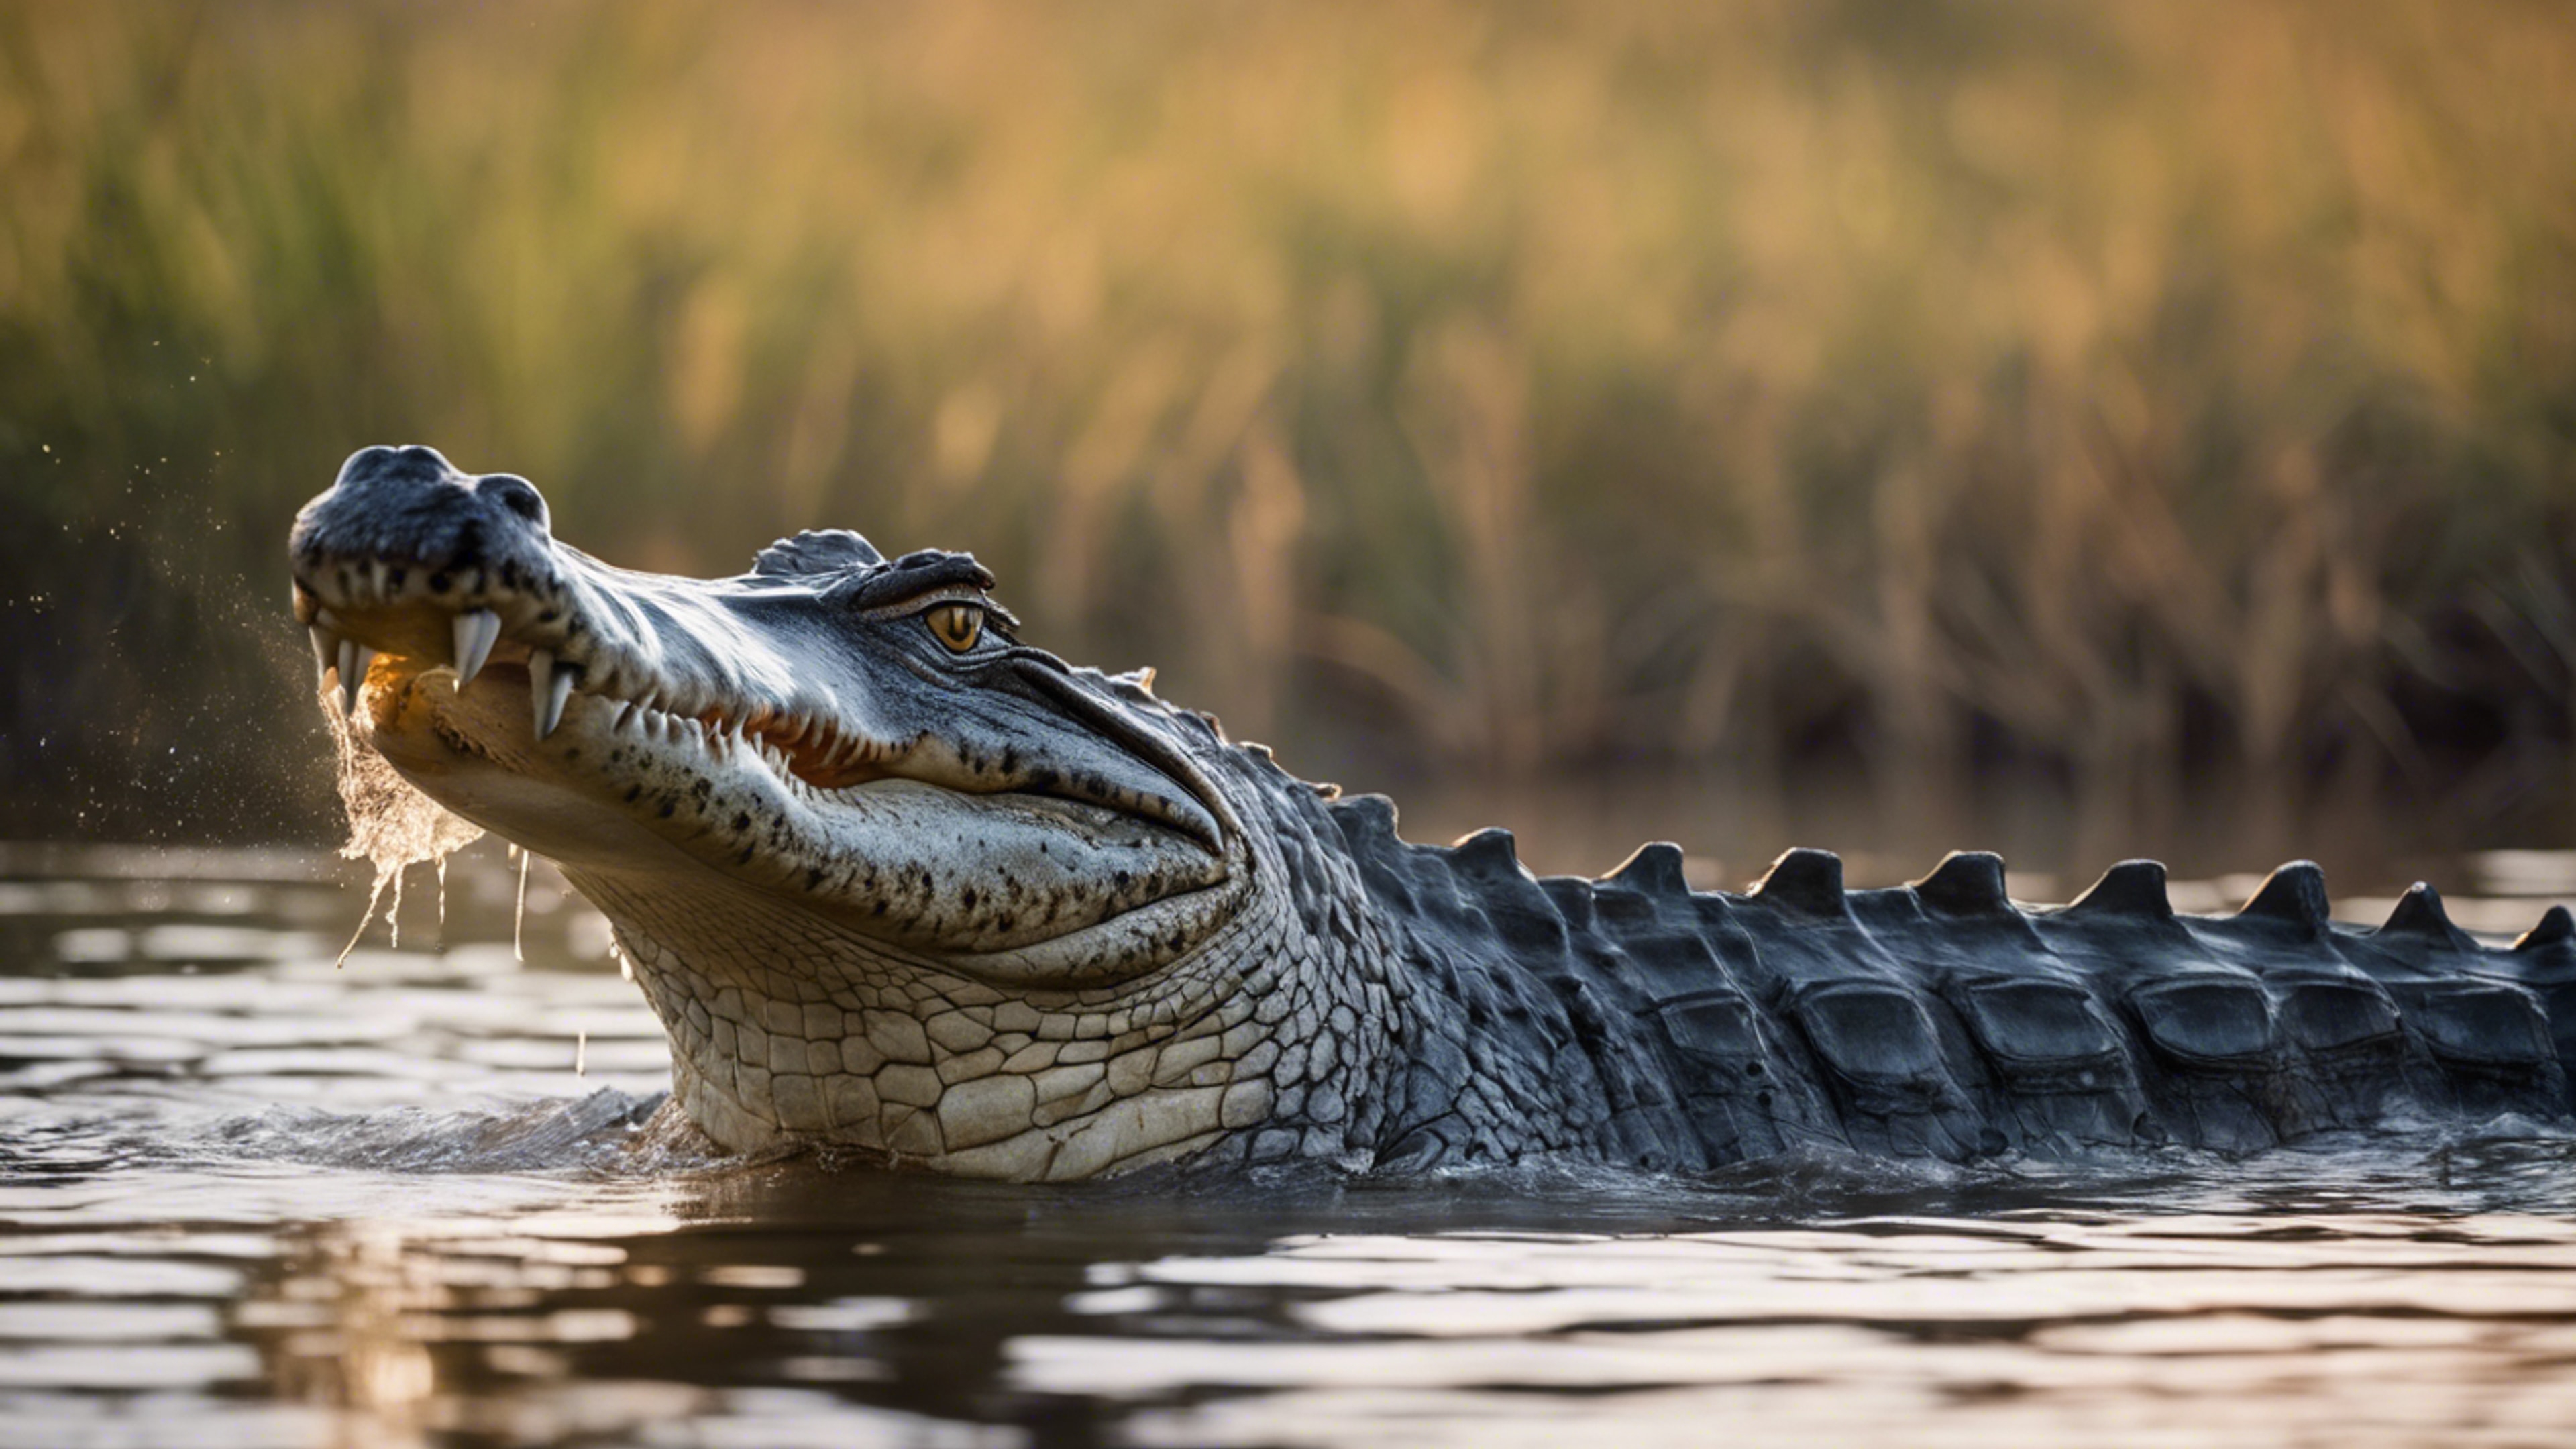 A glorious scene of a crocodile in the heart of the Okavango Delta. duvar kağıdı[926204686e5b483ca4a6]